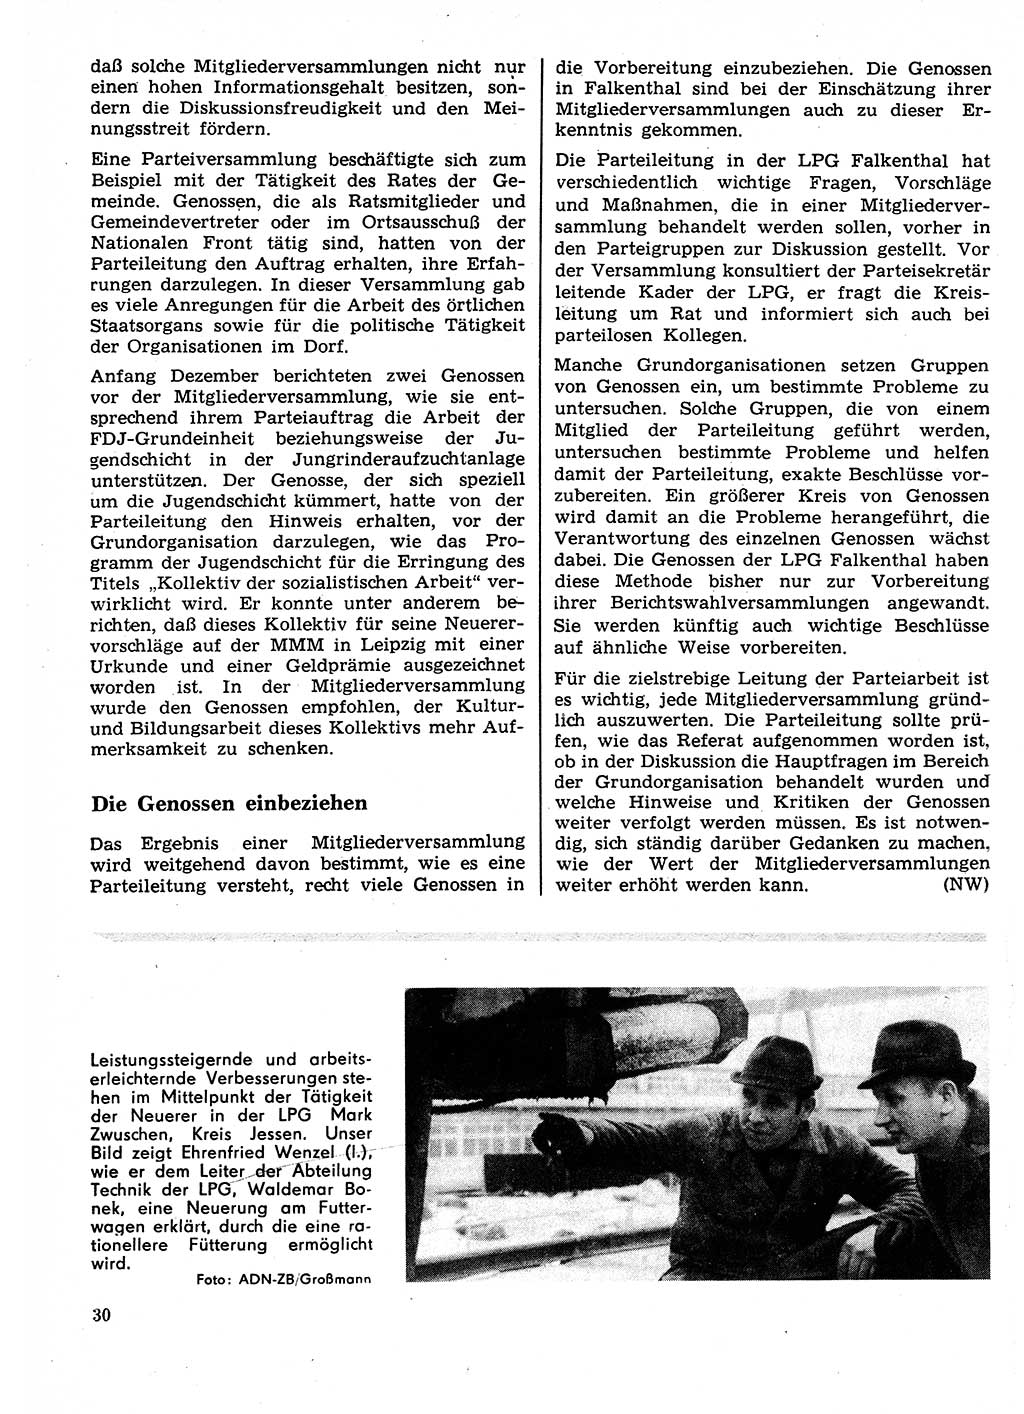 Neuer Weg (NW), Organ des Zentralkomitees (ZK) der SED (Sozialistische Einheitspartei Deutschlands) für Fragen des Parteilebens, 27. Jahrgang [Deutsche Demokratische Republik (DDR)] 1972, Seite 30 (NW ZK SED DDR 1972, S. 30)